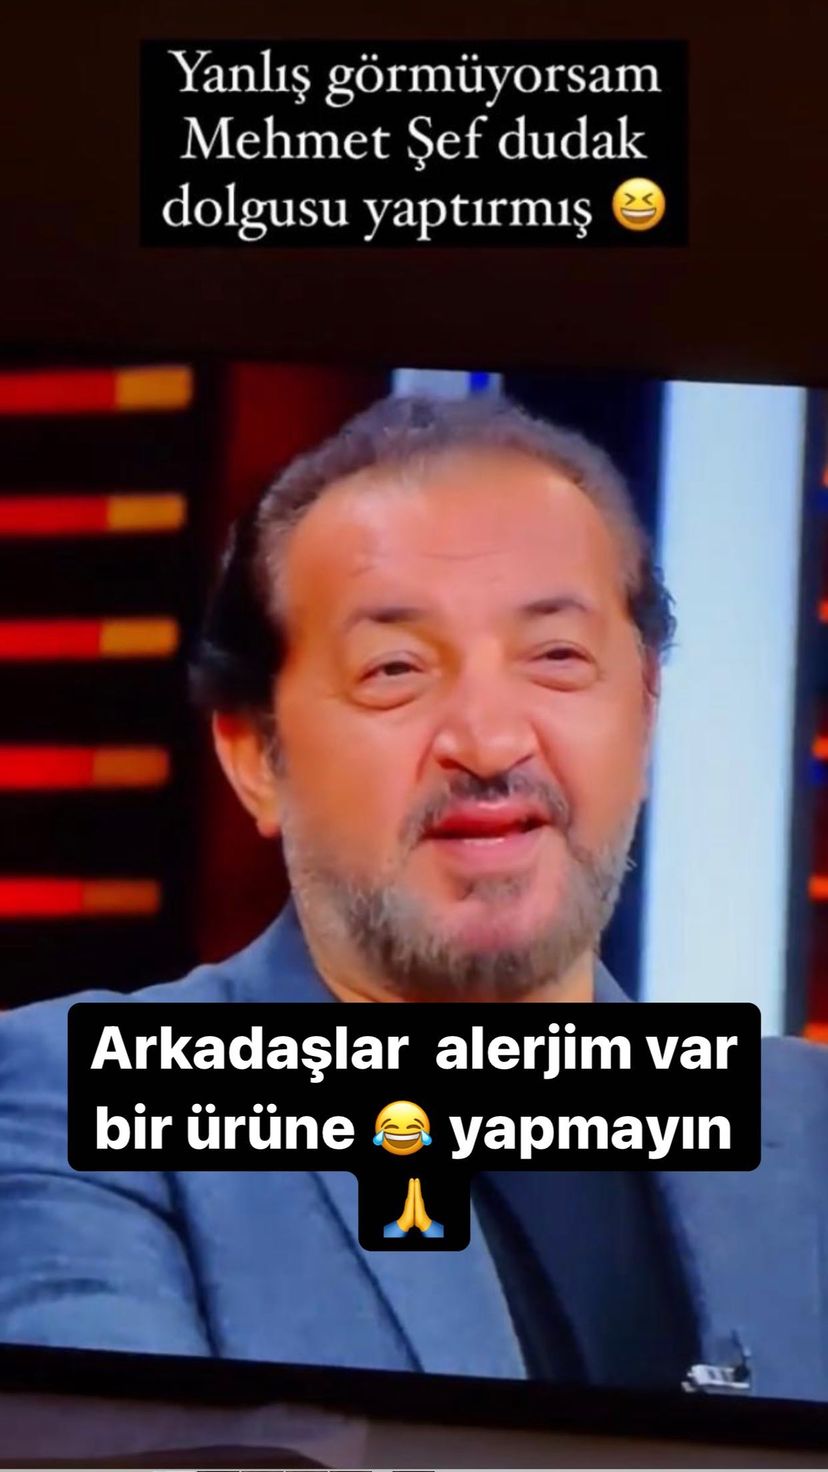 Ünlü şef Mehmet Yalçınkaya’dan dudak dolgusu yaptırdığı iddialarına yanıt